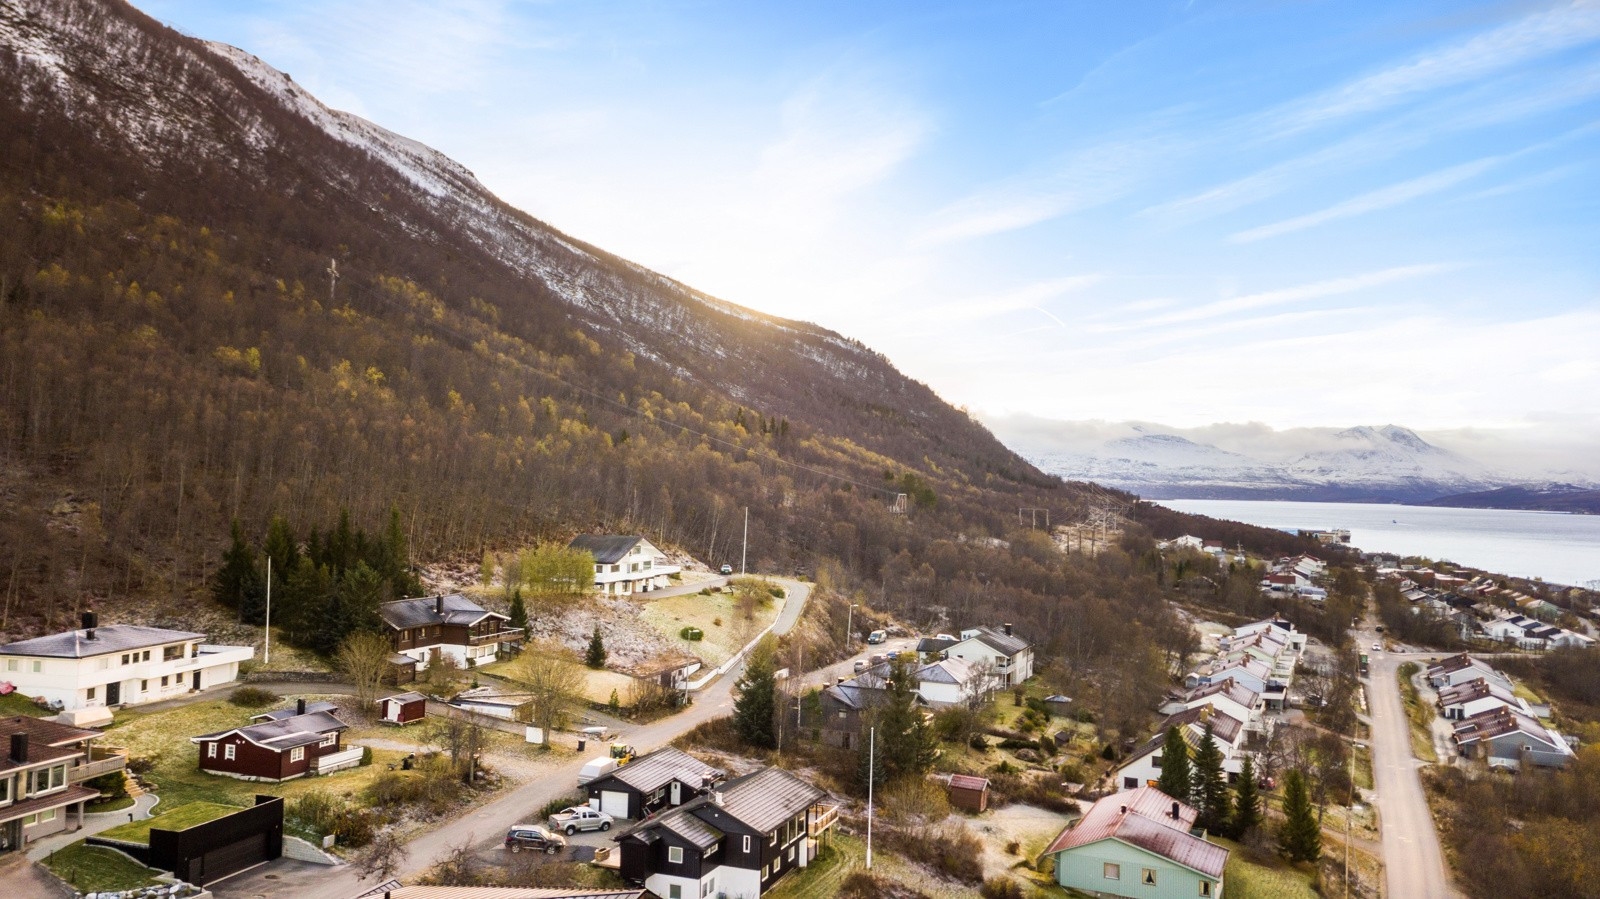 Tomten befinner seg innerst i Sollivegen, en blindvei sentralt i Tromsdalen. Eiendommen grenser mot utmark og er den innerste eiendommen i gata.